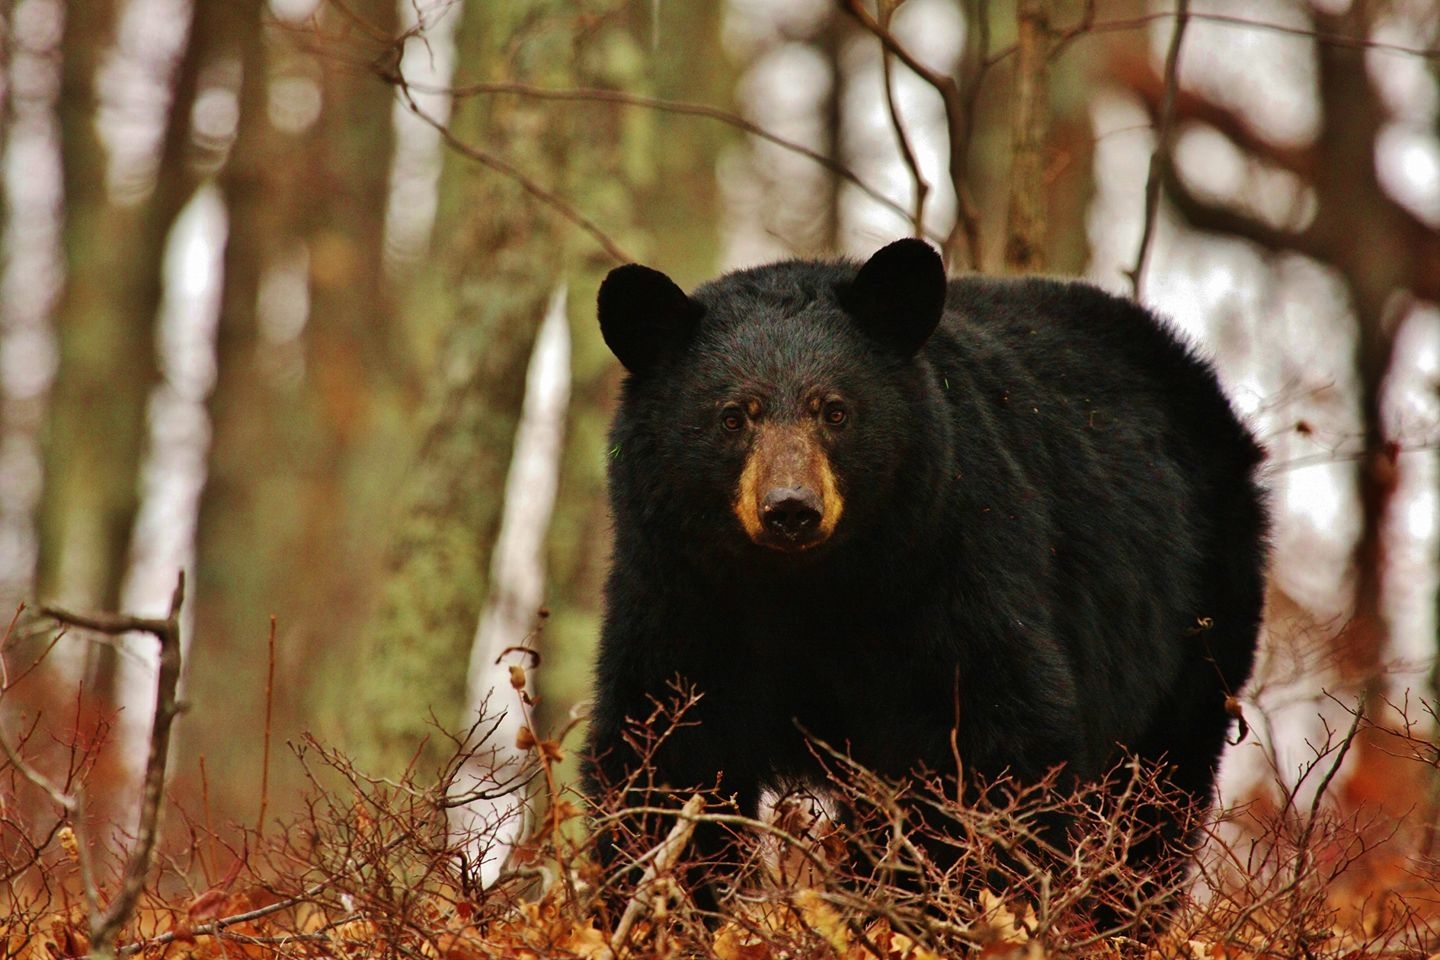 NJ black bear hunt moves forward after delays